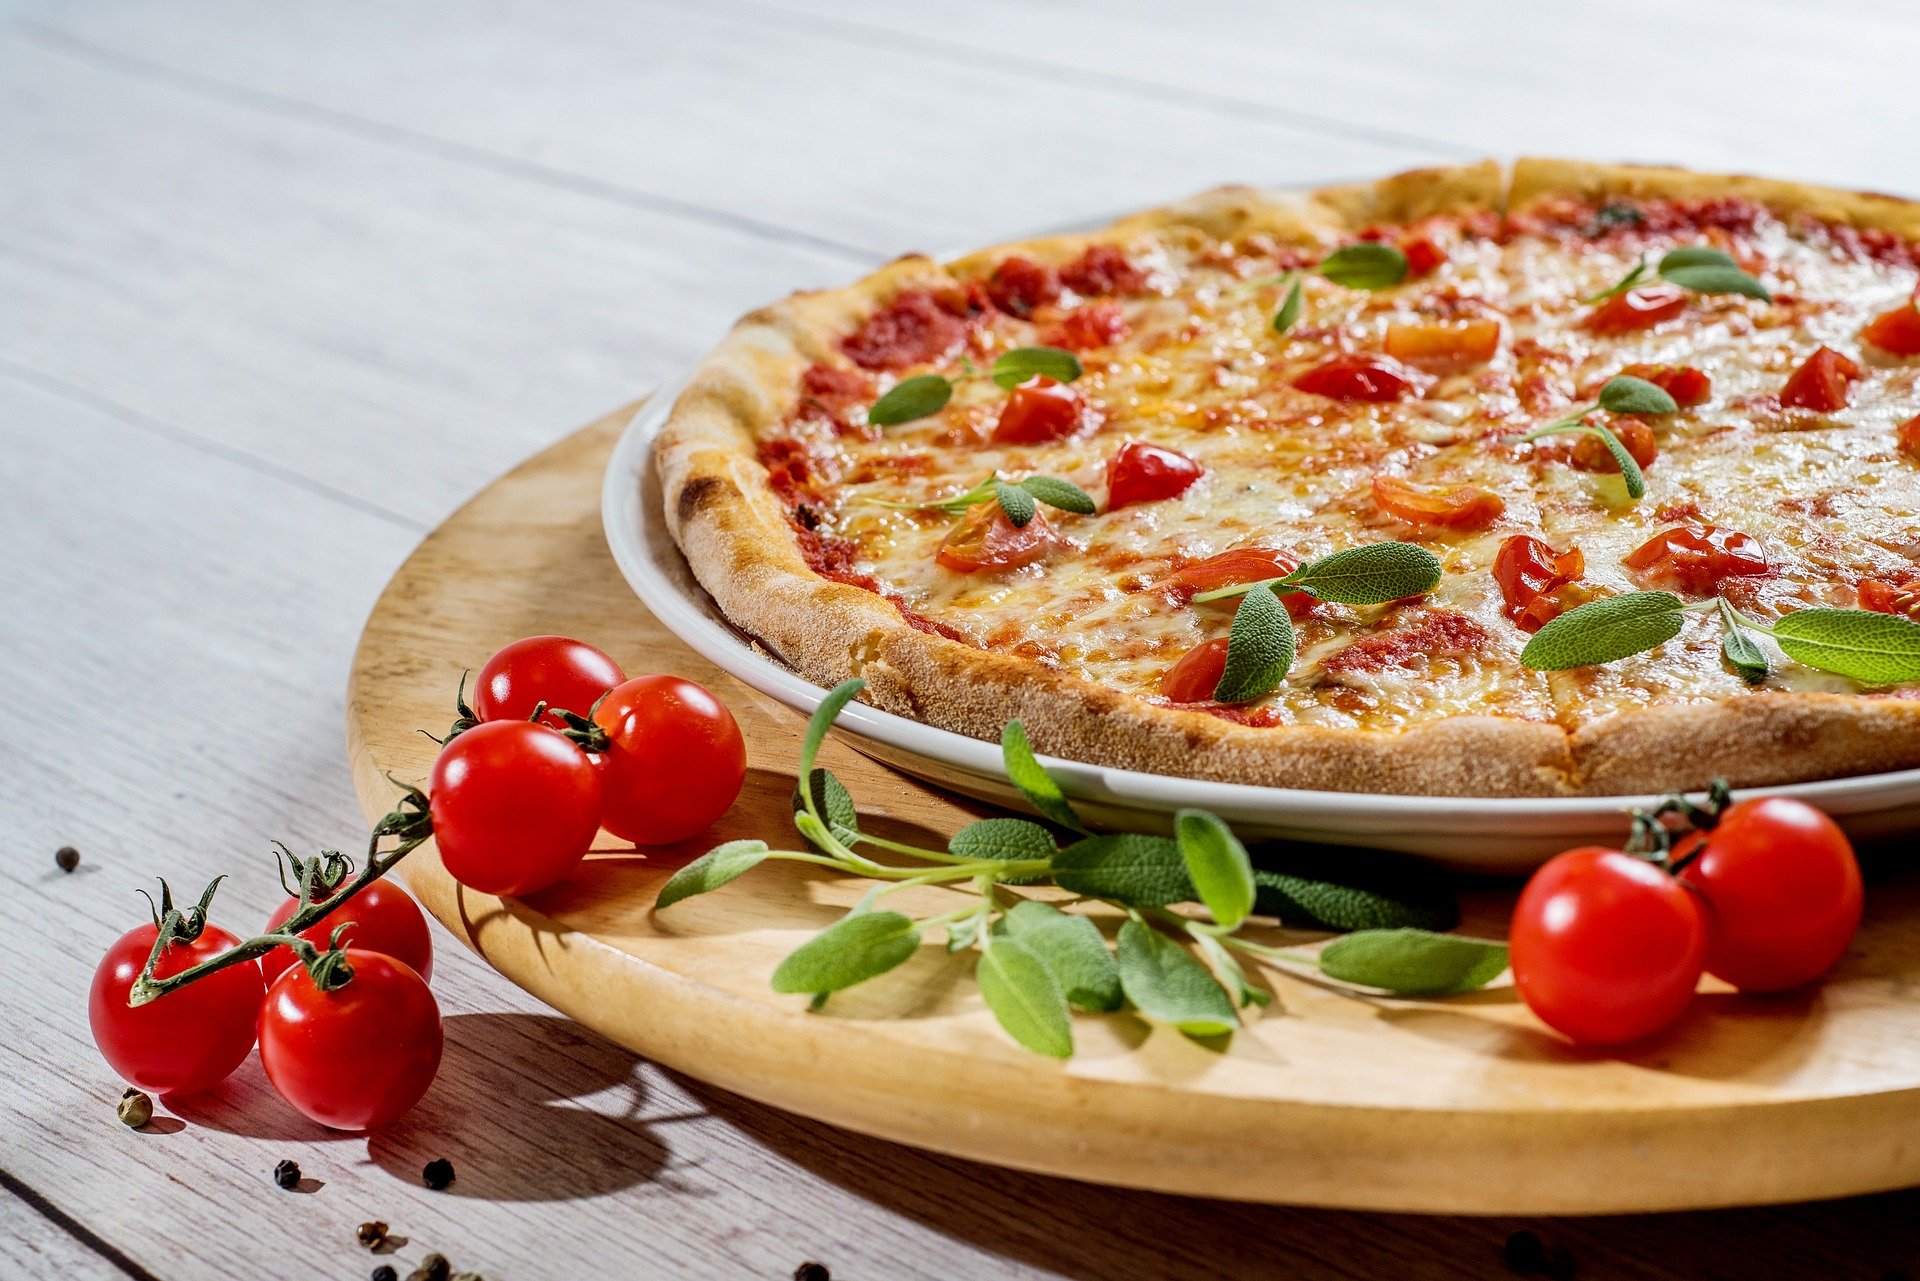 Índice pizza: una grande de muzzarella vale 143% más que hace dos años